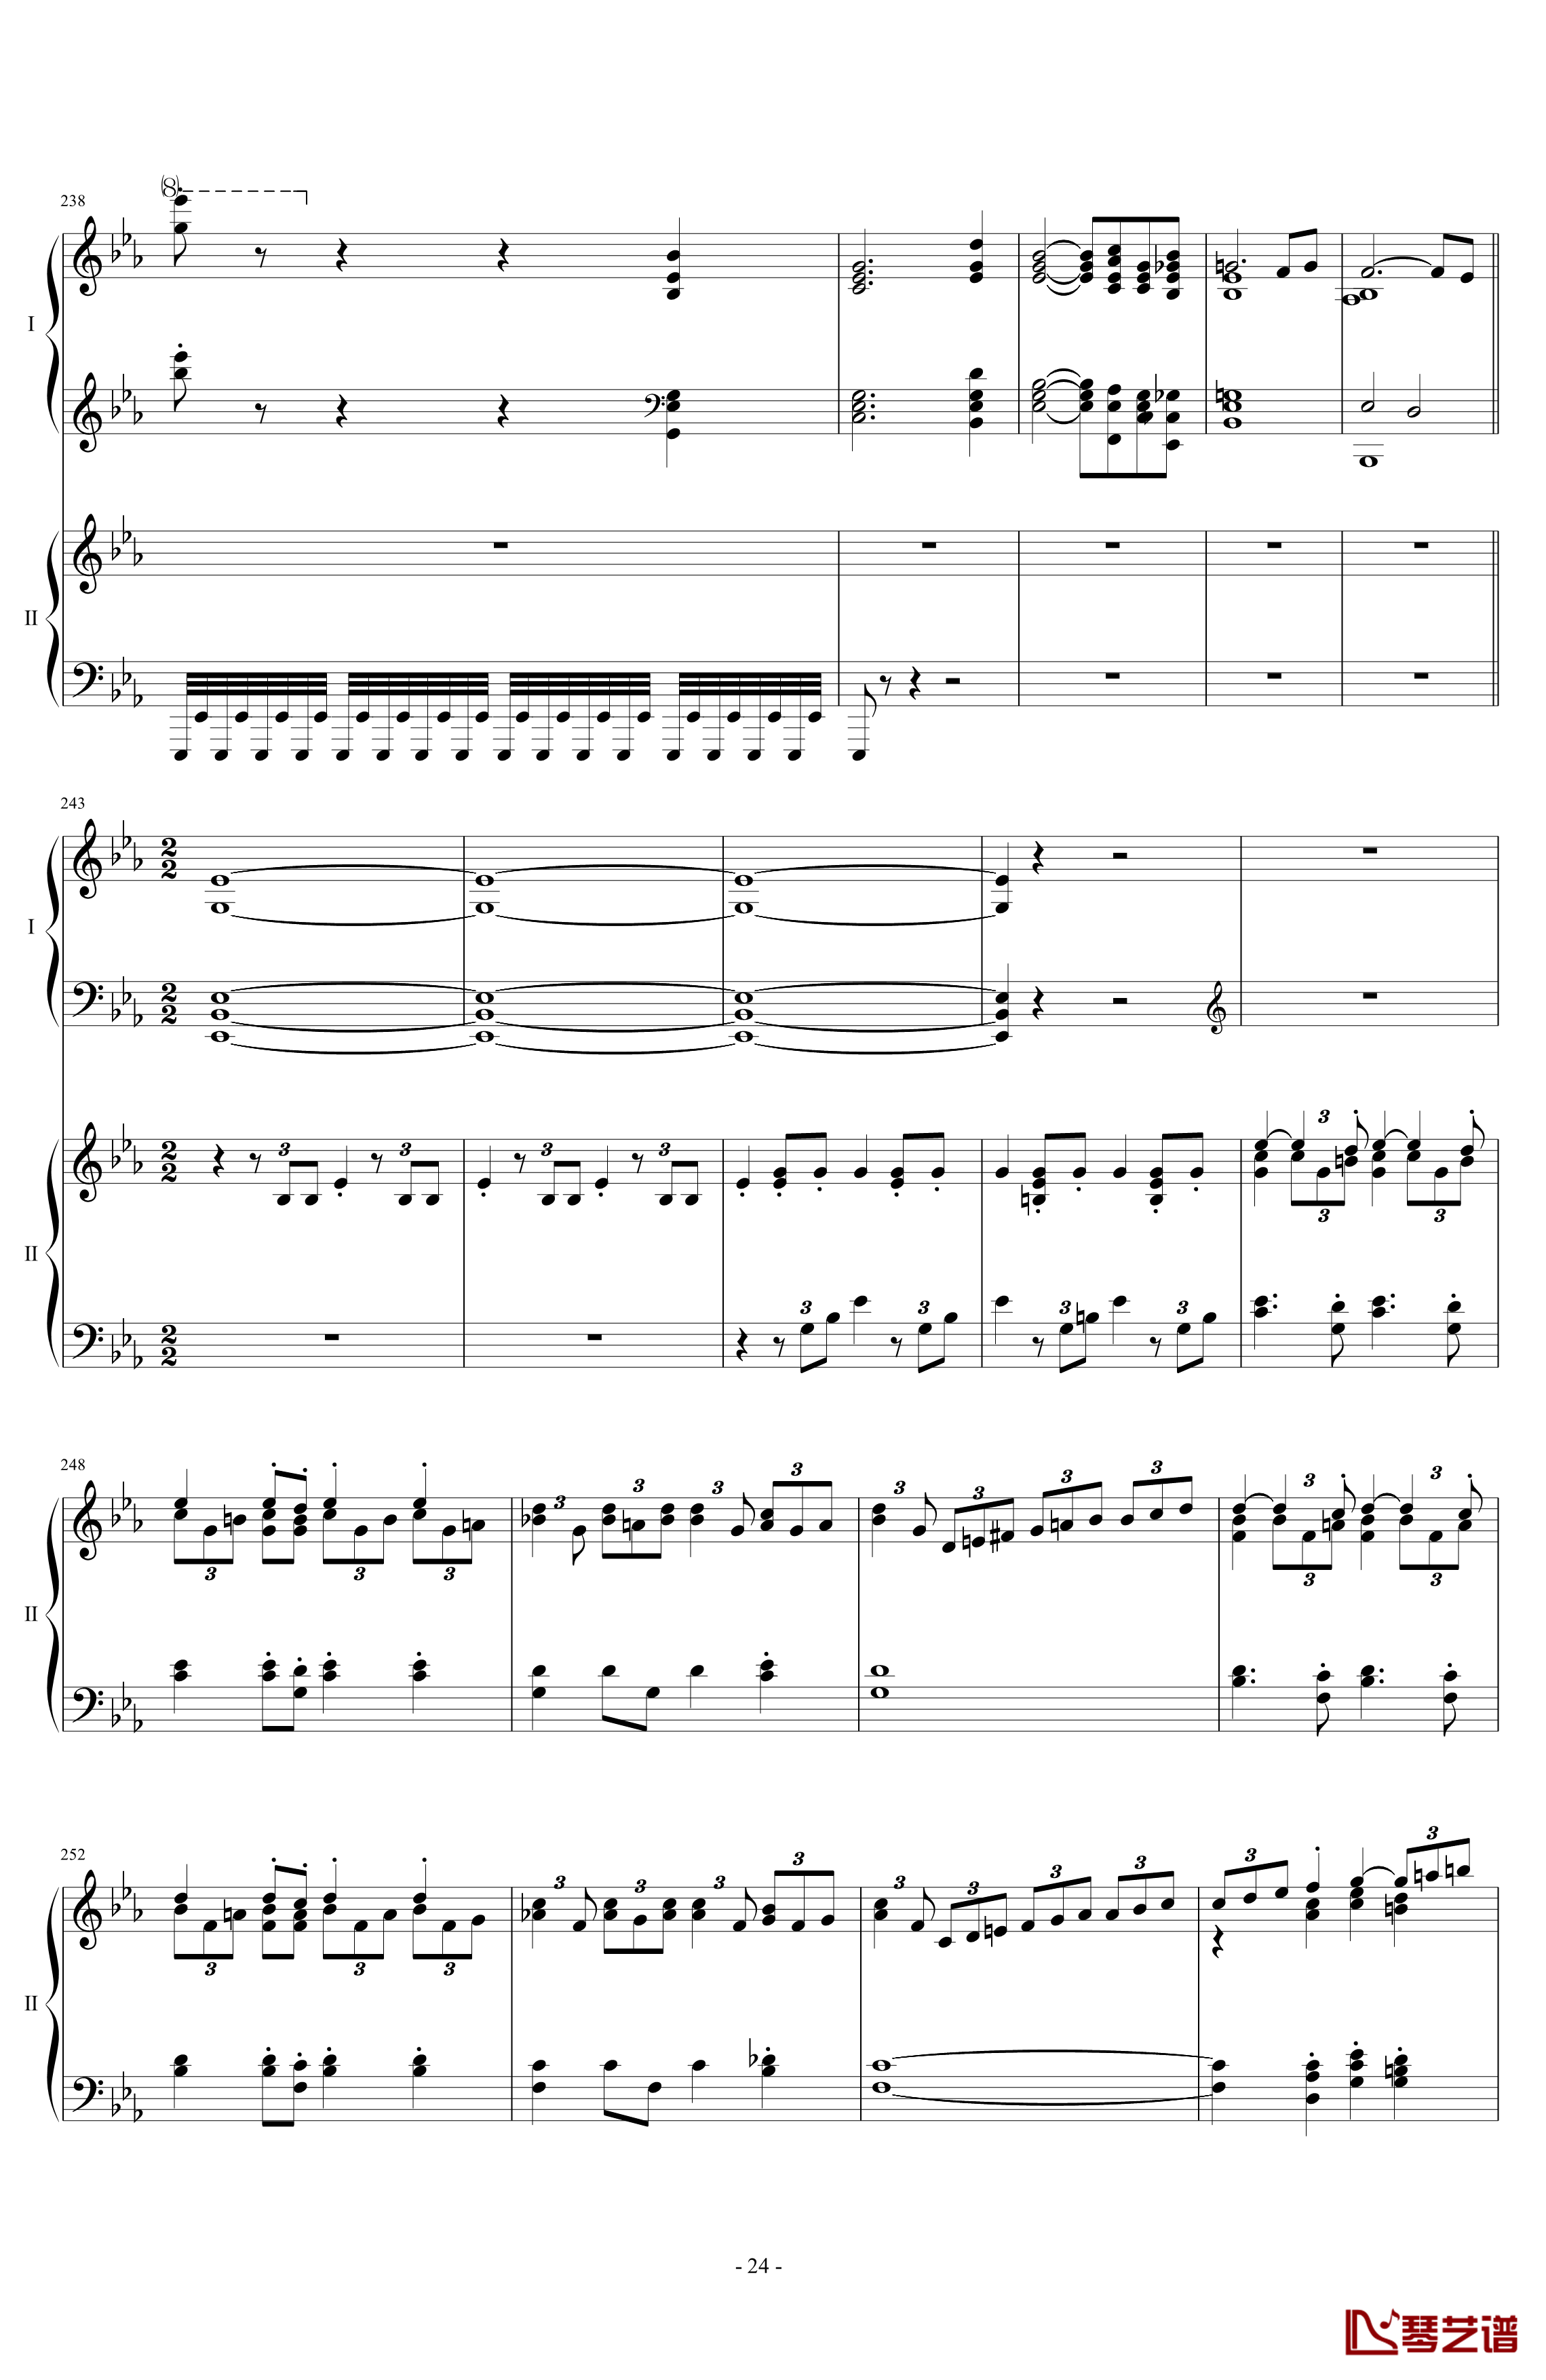 拉三第三乐章41页双钢琴钢琴谱-最难钢琴曲-拉赫马尼若夫24